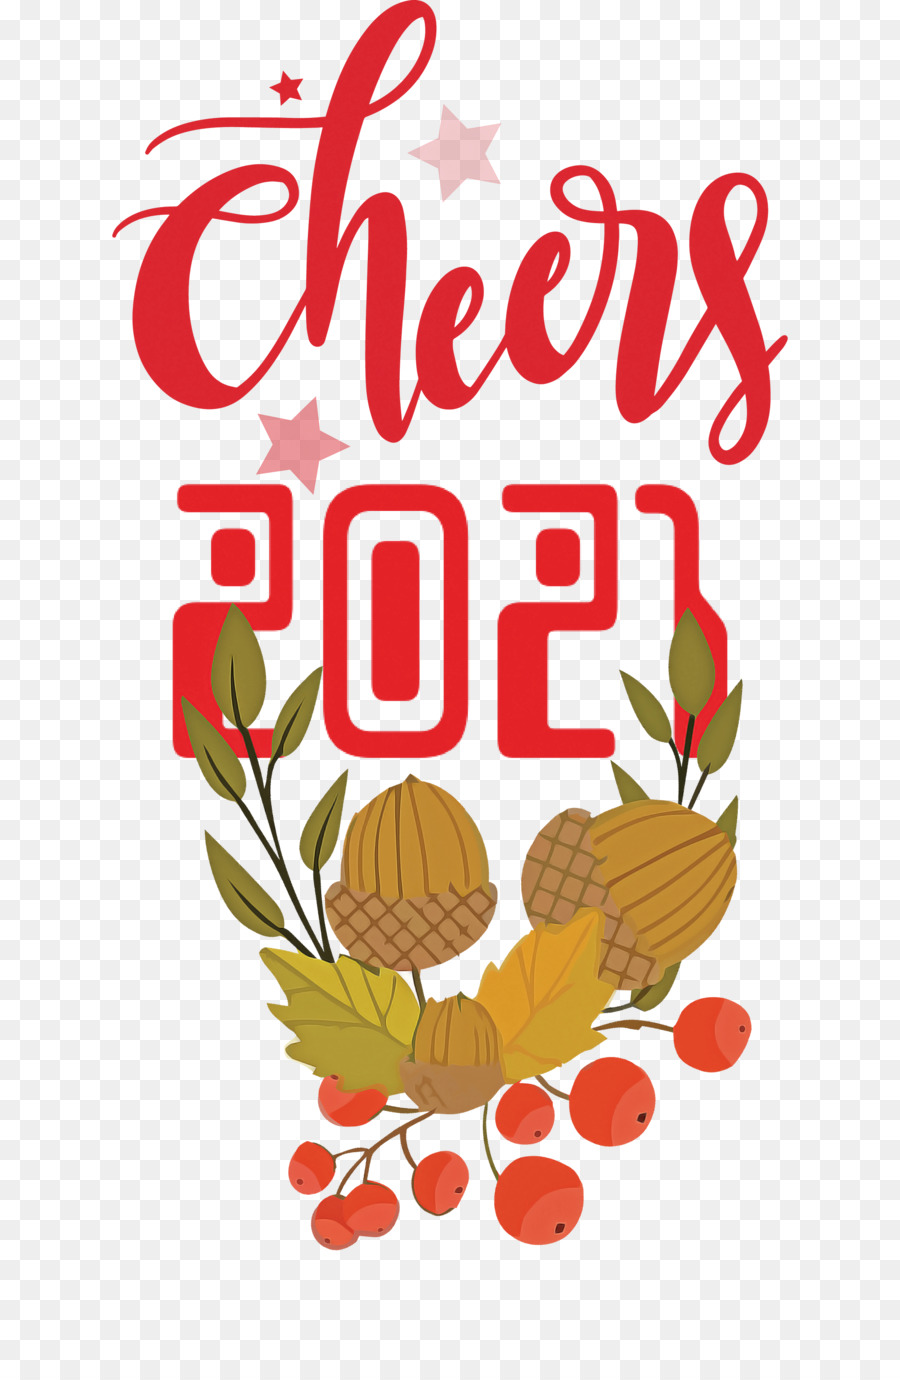 Cheers 2021 New Year Cheers.2021 New Year